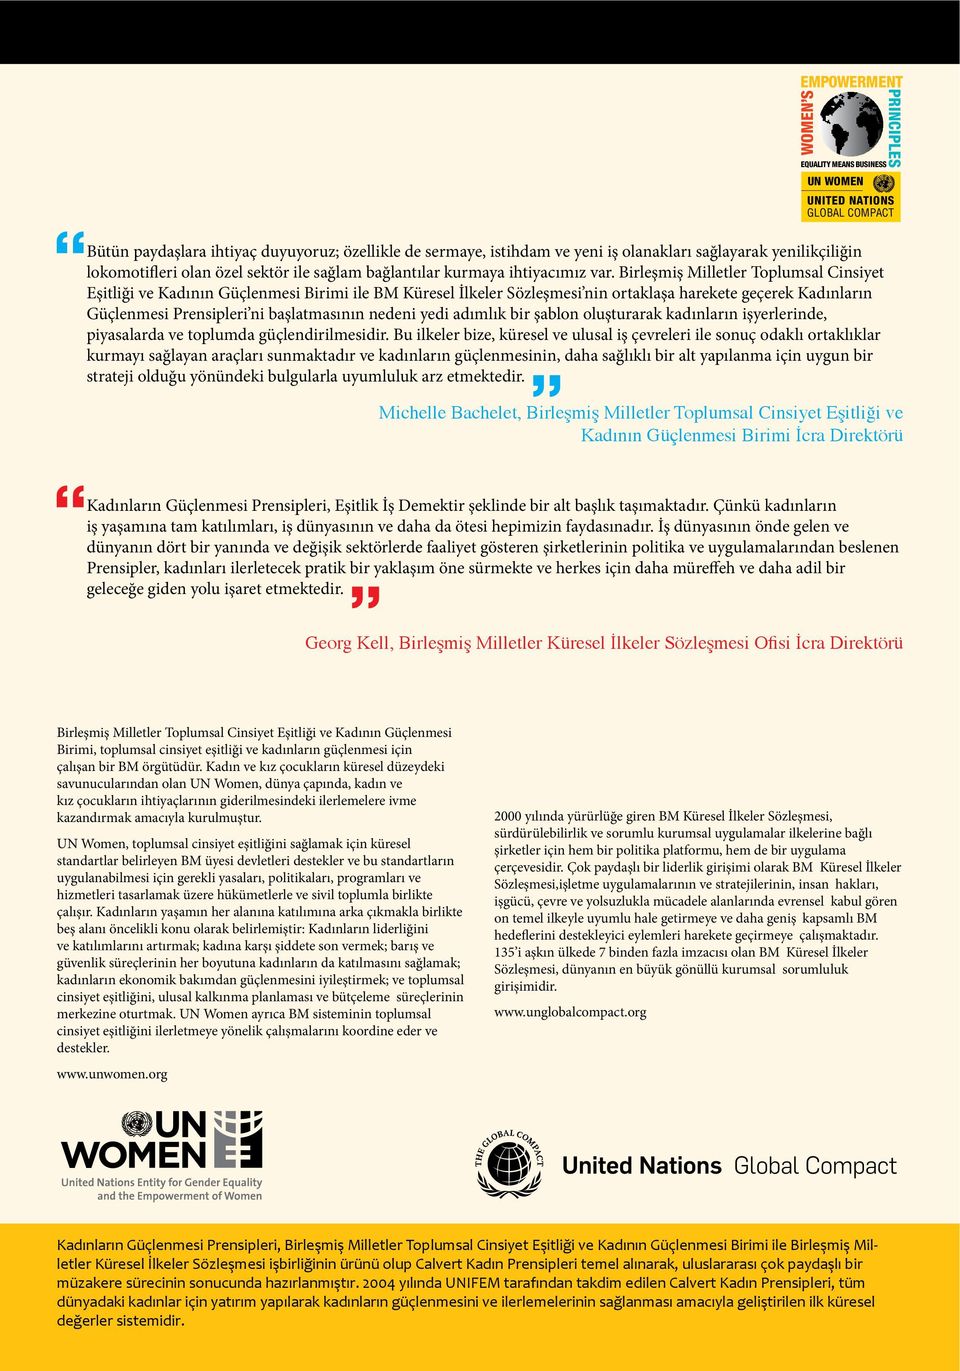 Birleşmiş Milletler Toplumsal Cinsiyet Eşitliği ve Kadının Güçlenmesi Birimi ile BM Küresel İlkeler Sözleşmesi nin ortaklaşa harekete geçerek Kadınların Güçlenmesi Prensipleri ni başlatmasının nedeni